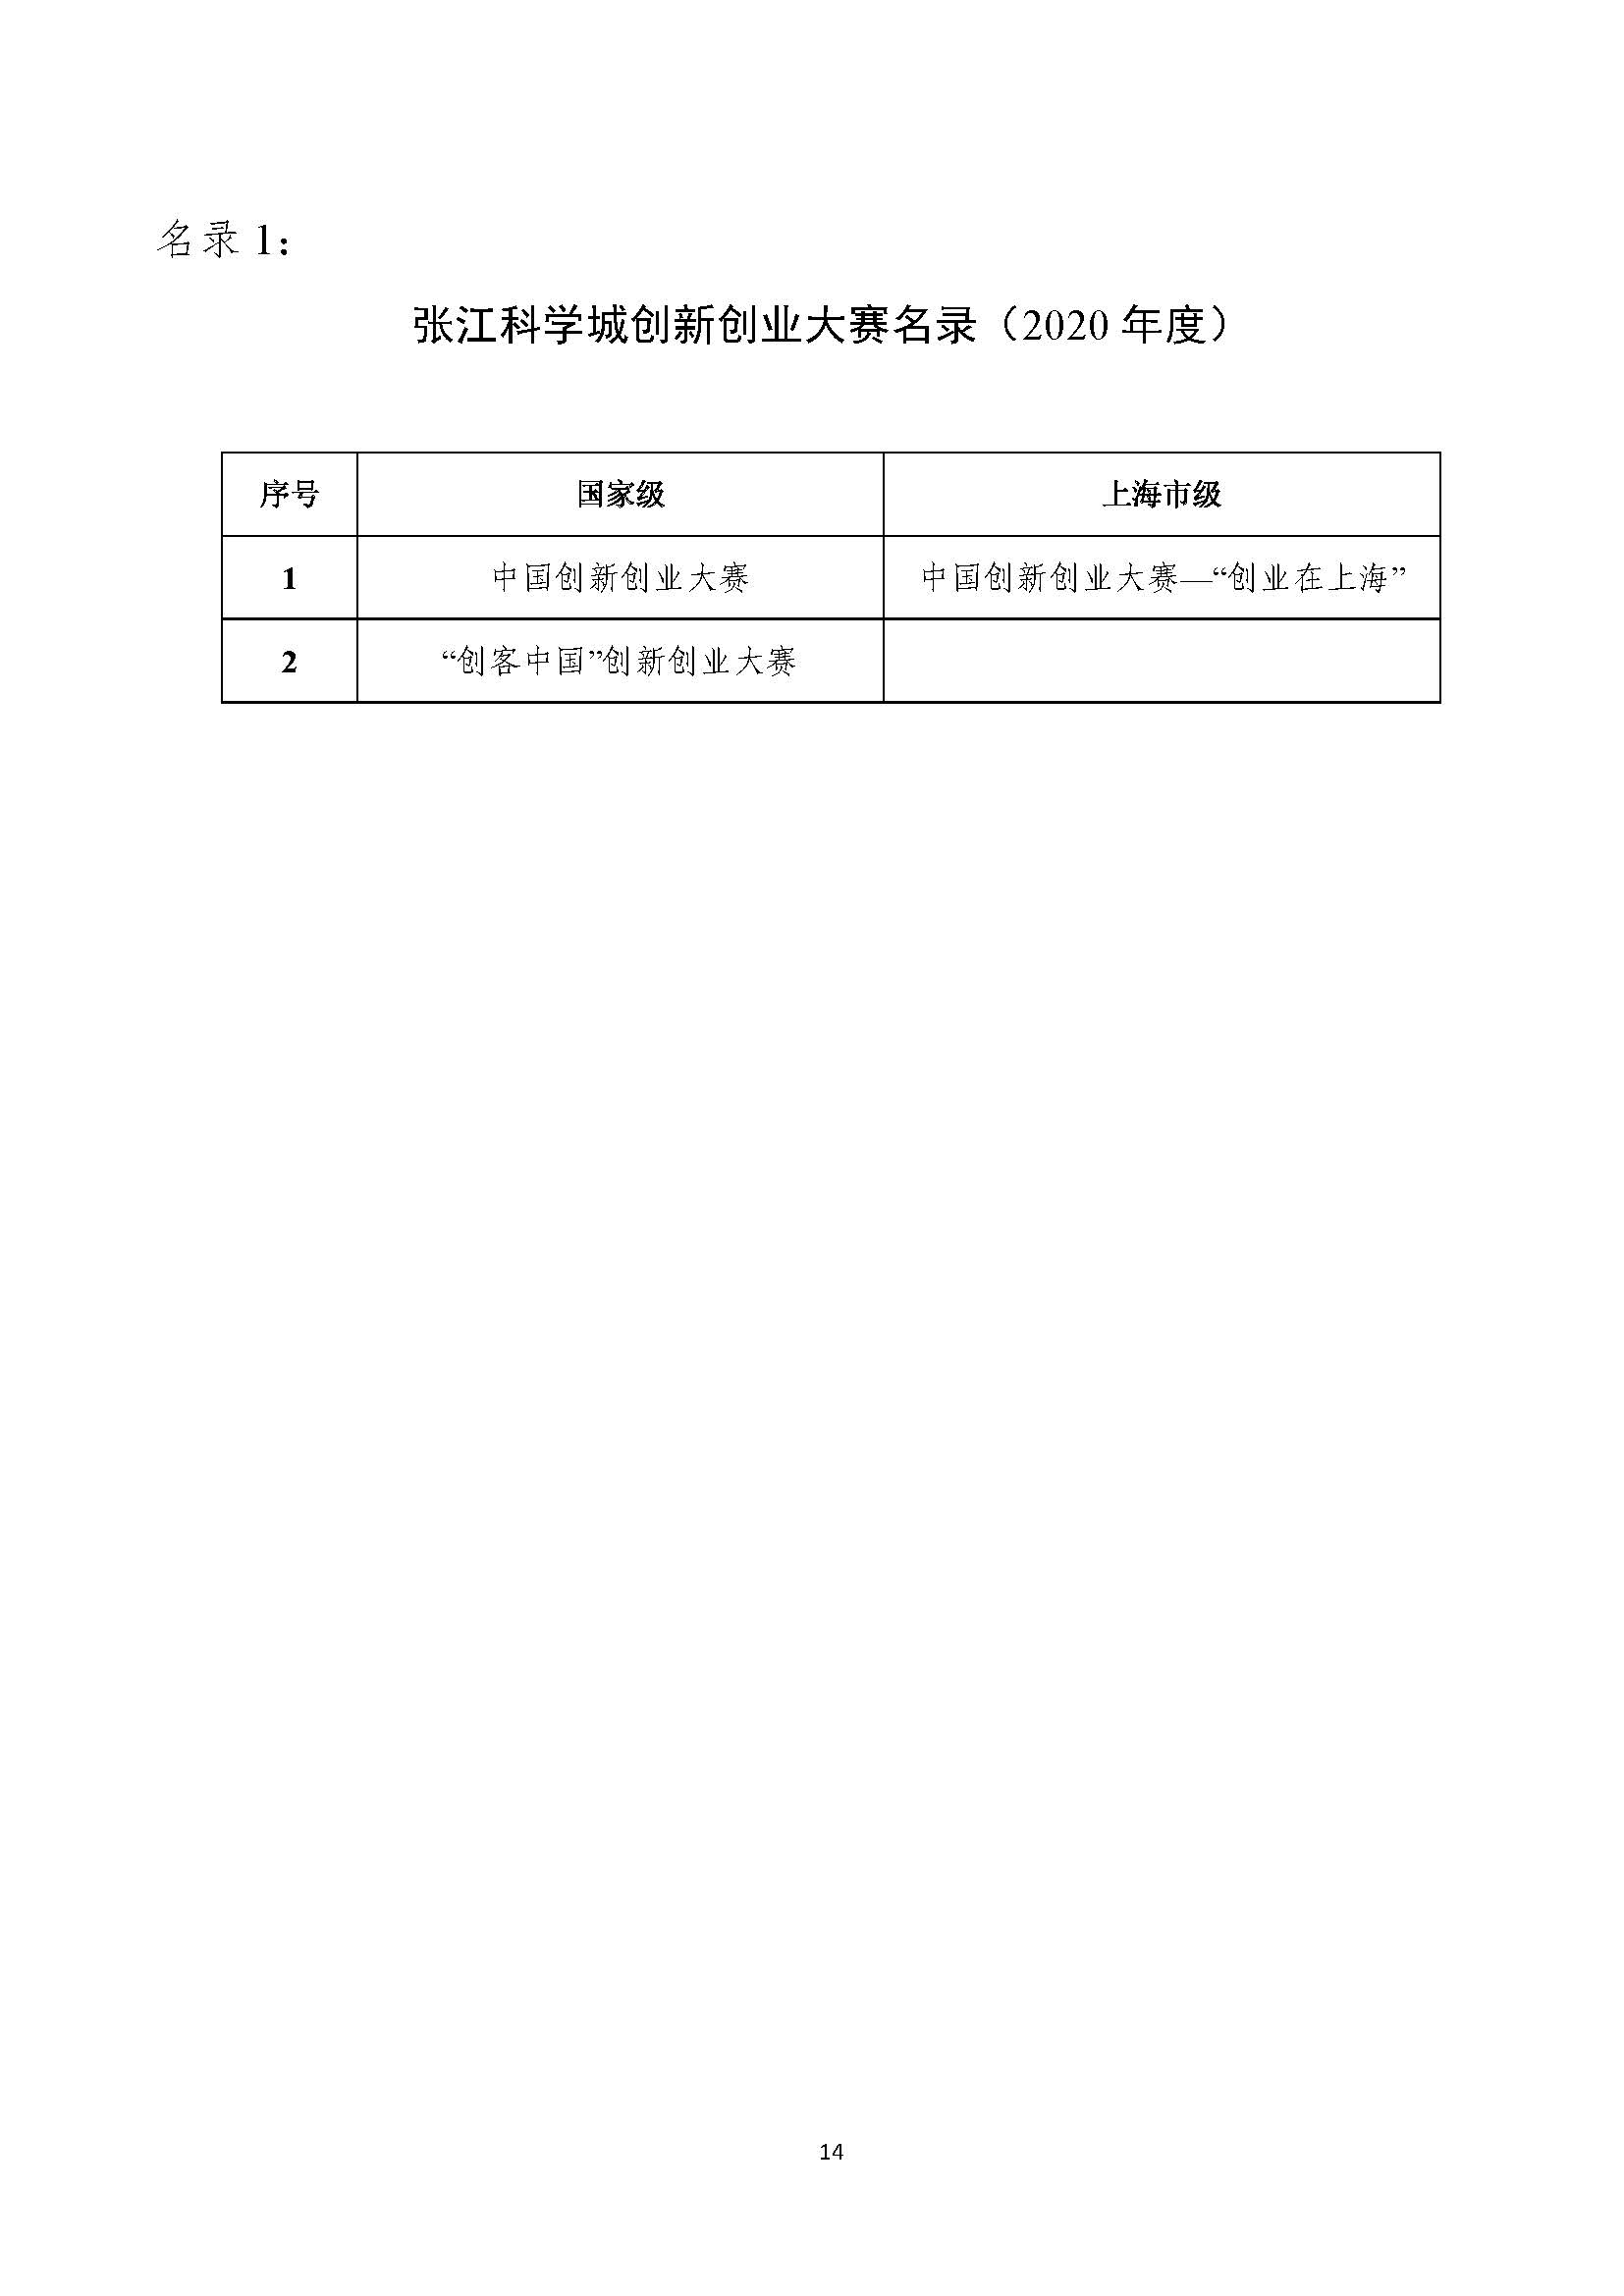 2021年张江科学城专项政策申报指南_页面_14.jpg